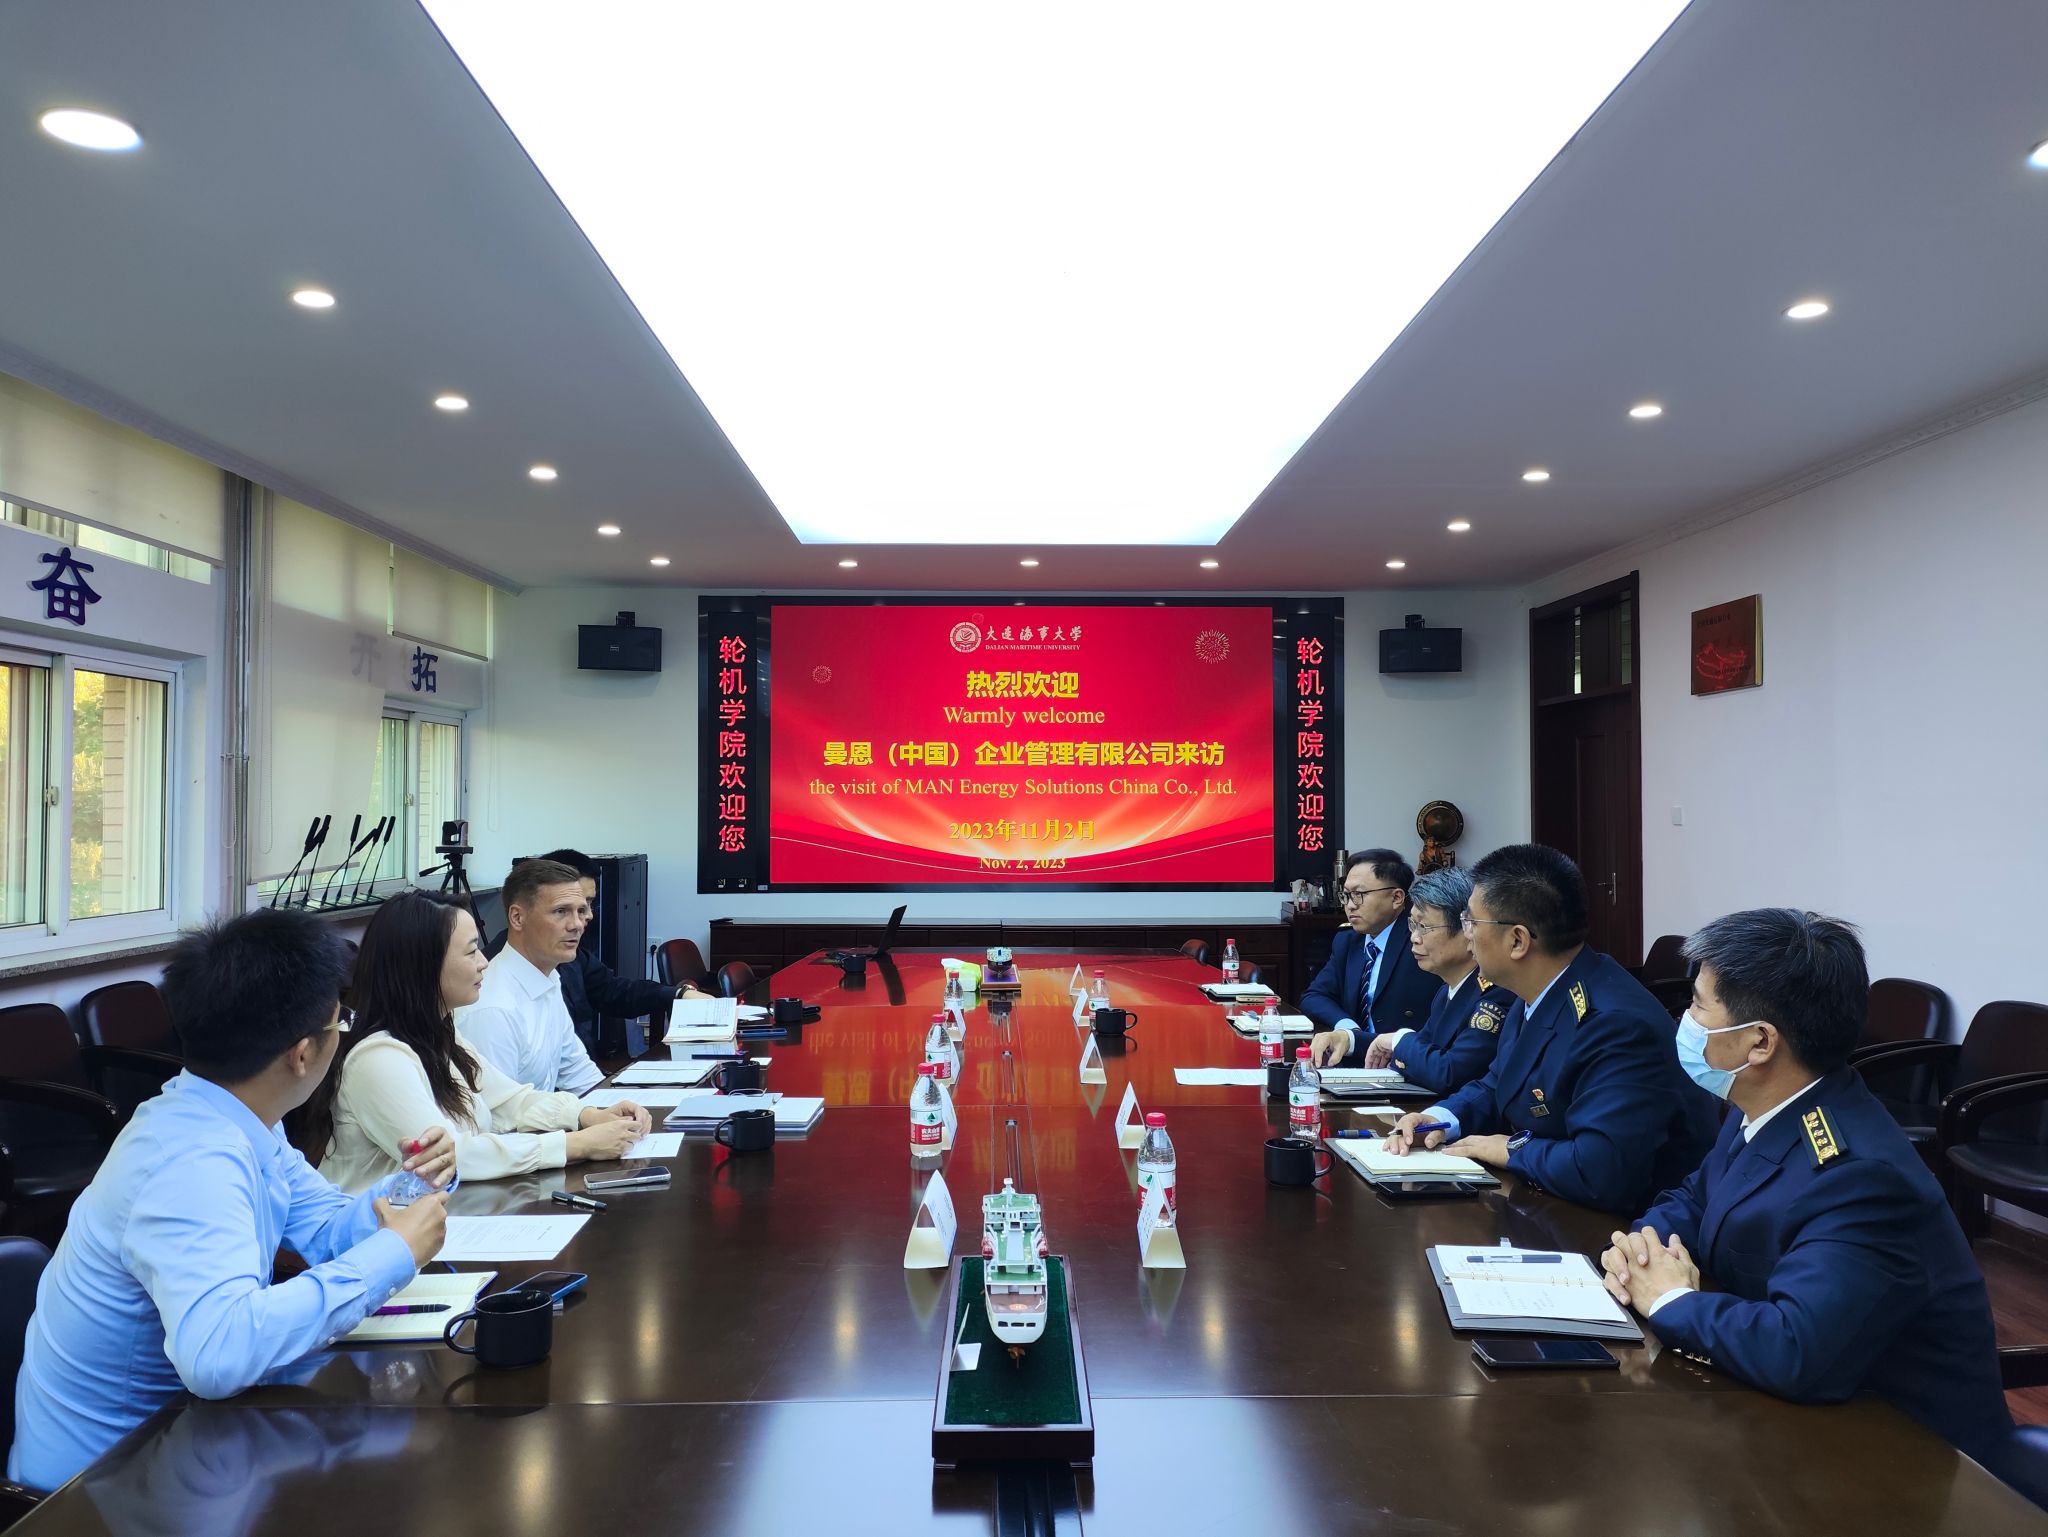 曼恩（中国）企业管理有限公司与我院开展合作研讨